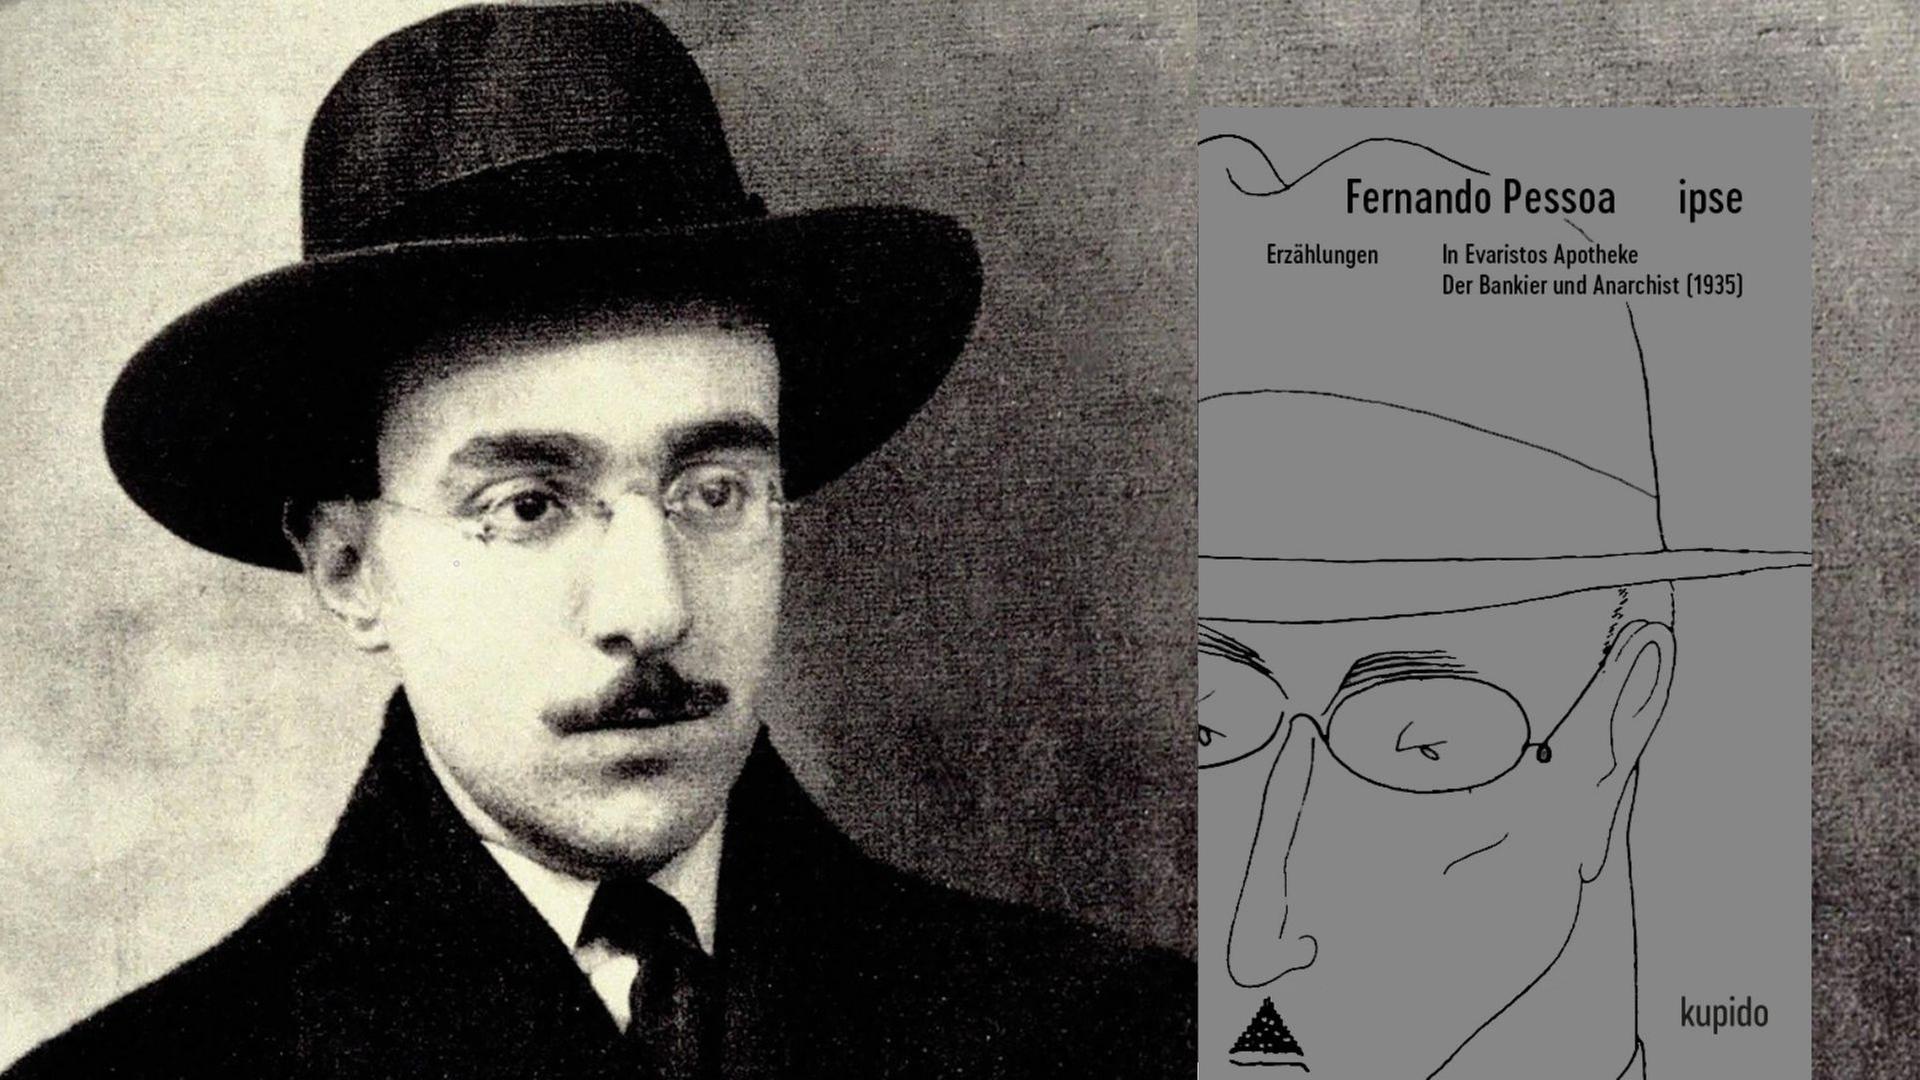 Fernando Pessoa und seine Erzählungen "In Evaristos Apotheke / Der Bankier und Anarchist (1935)"